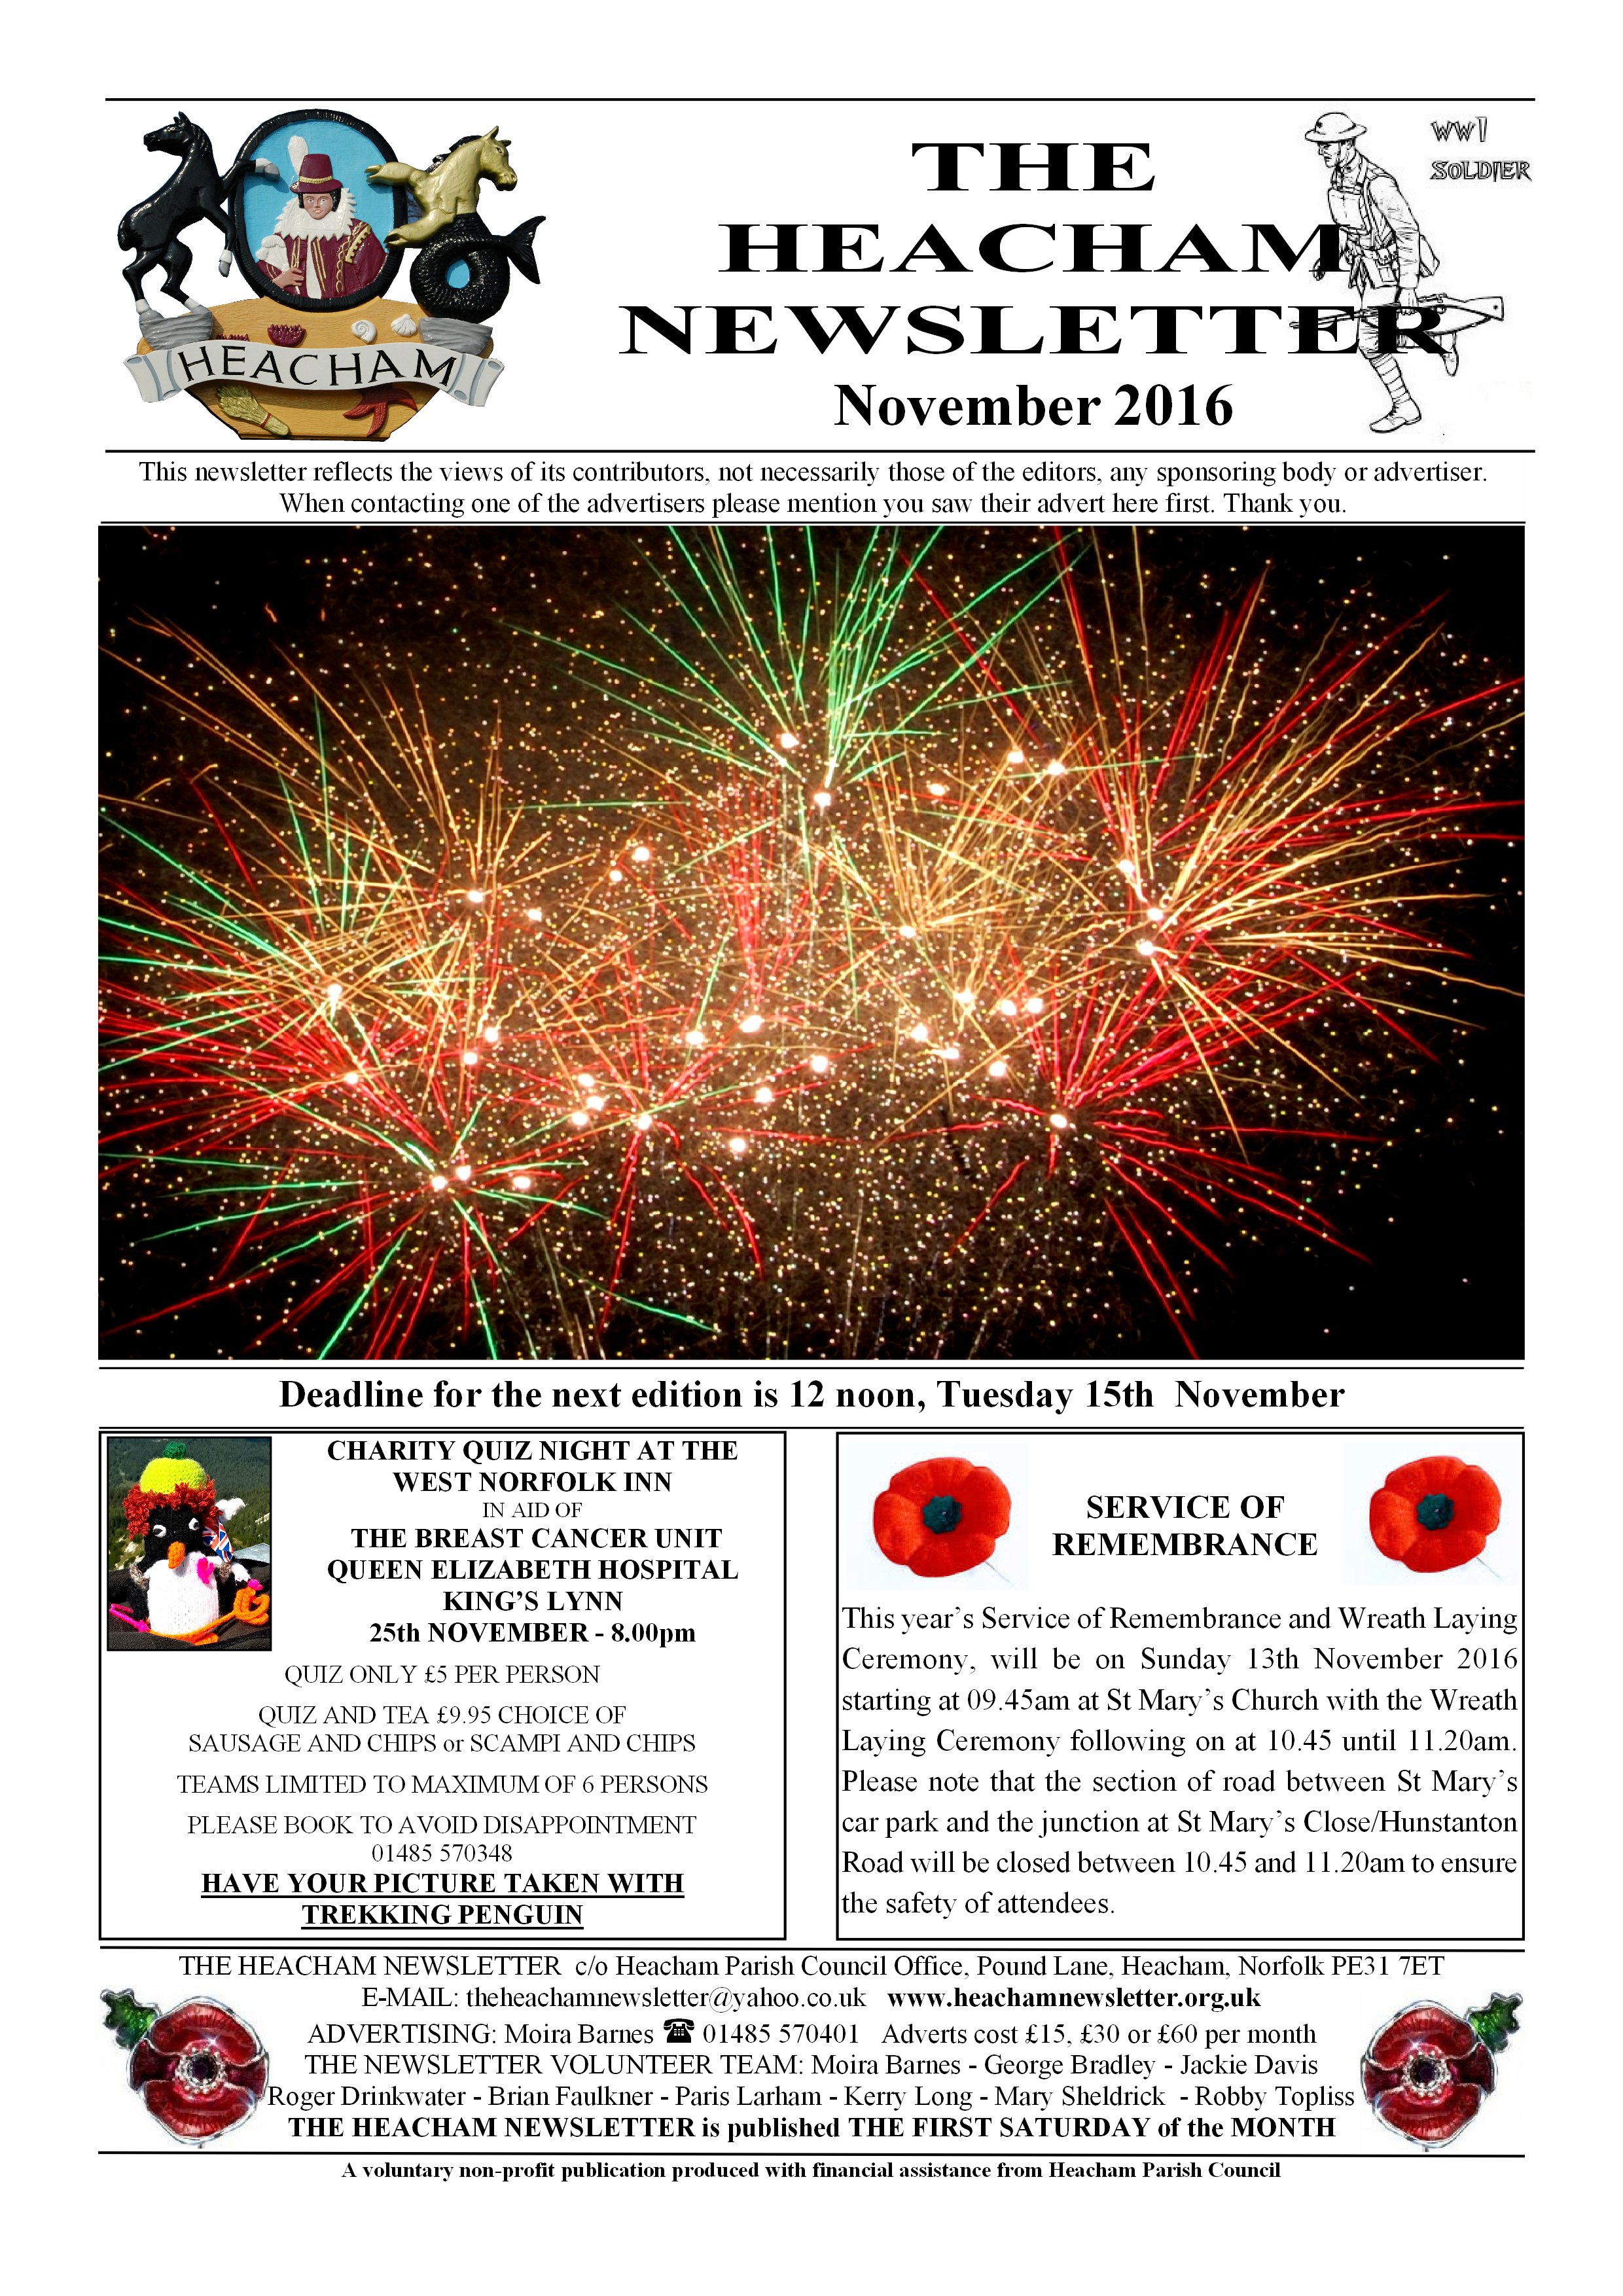 November 2016 Newsletter